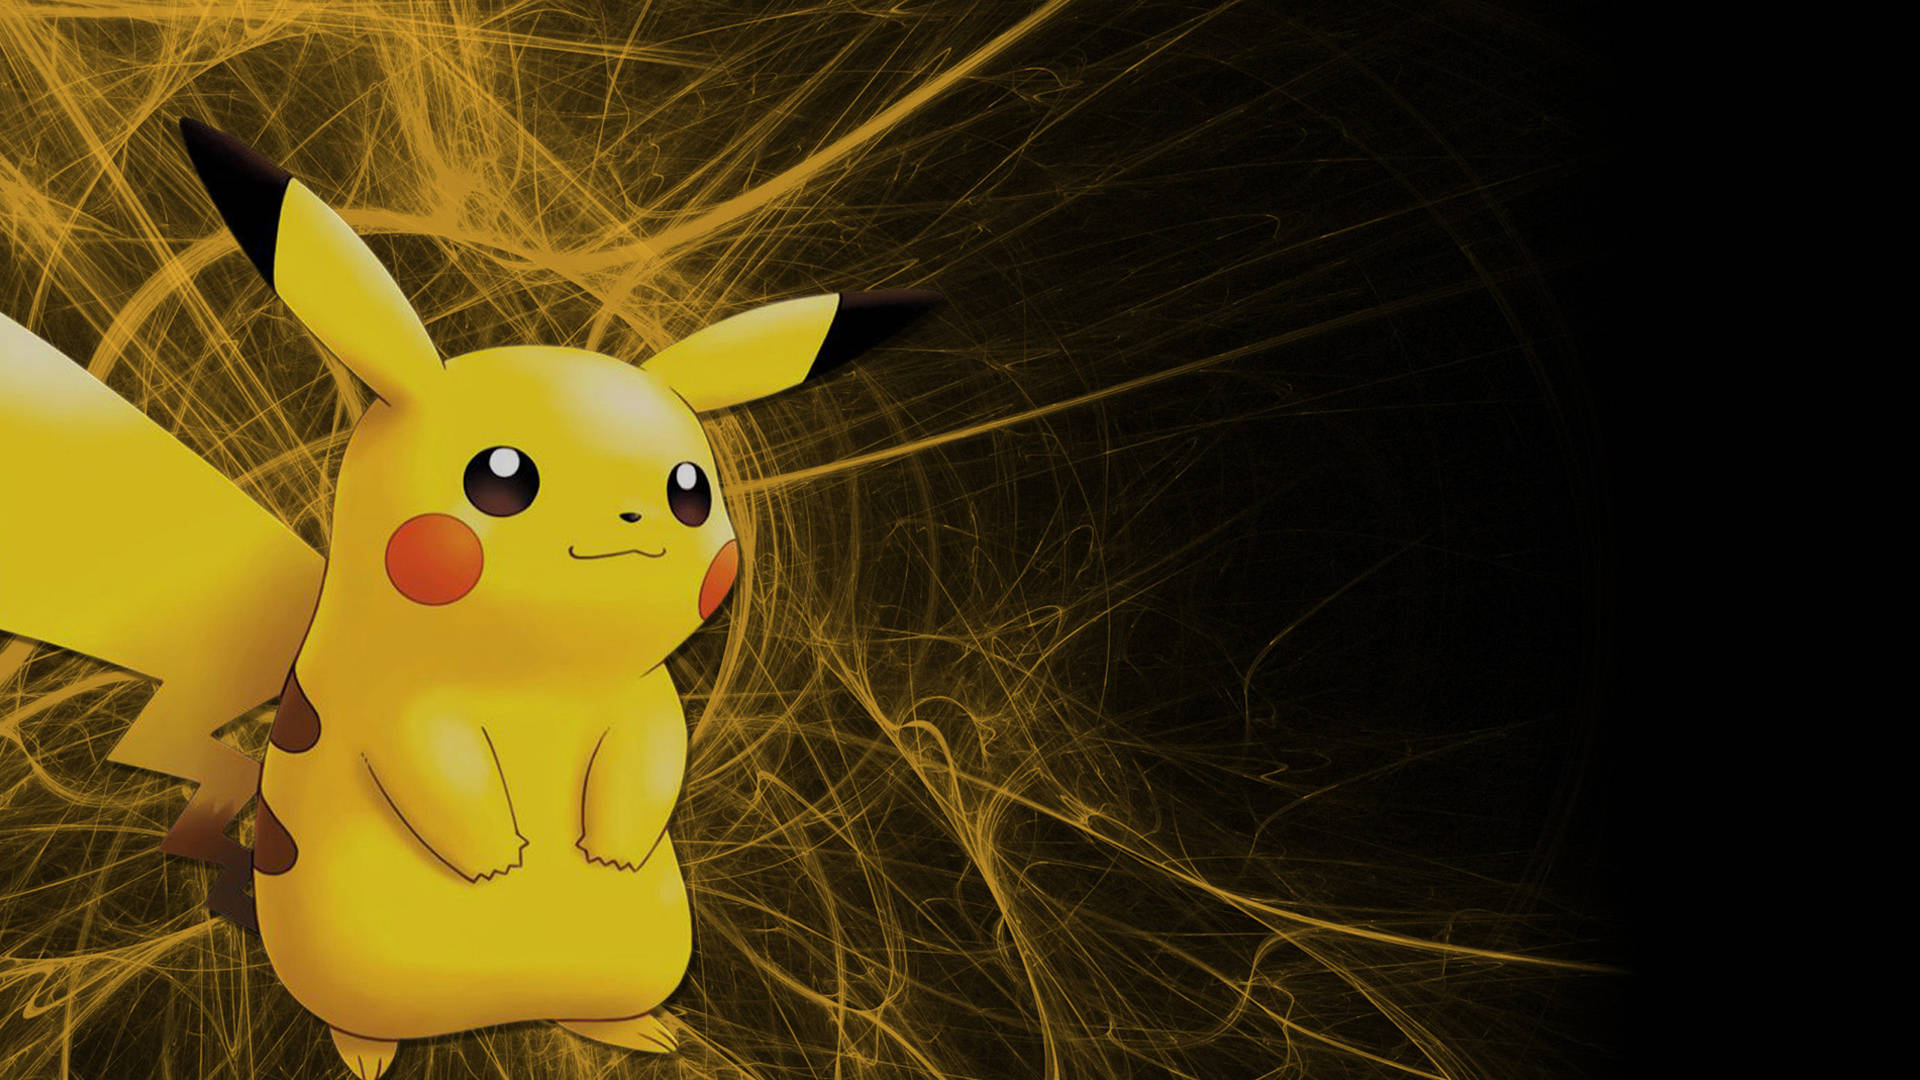 Pikachu Electric Shock Cool Pokemon Wallpaper